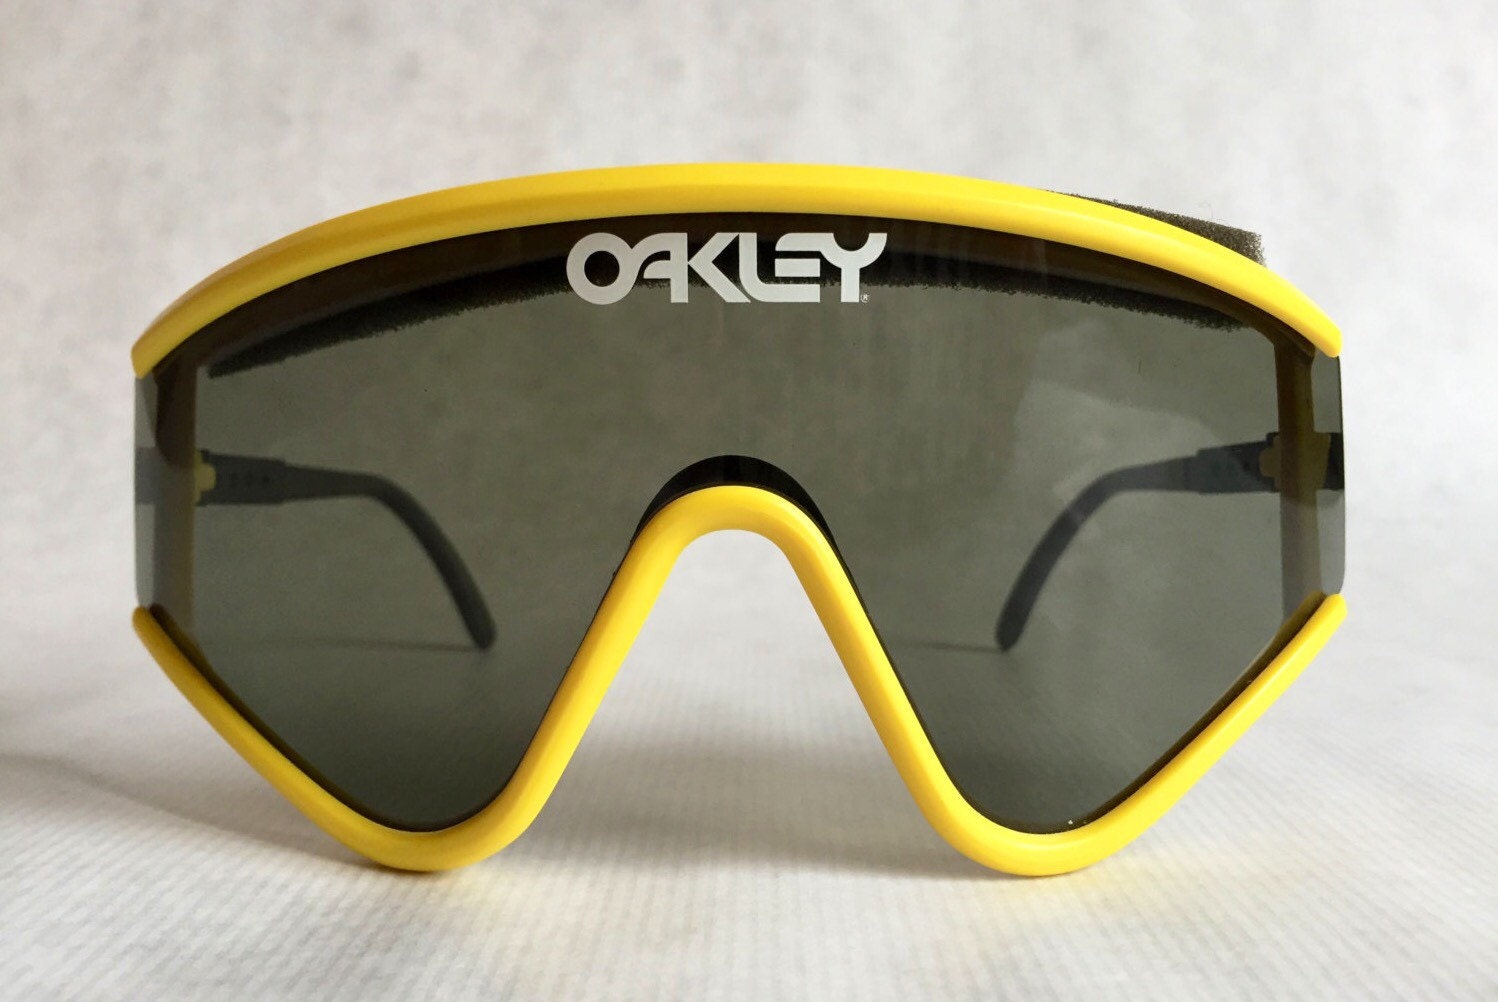 Factory Pilot 1987 Vintage Sunglasses Set - Etsy